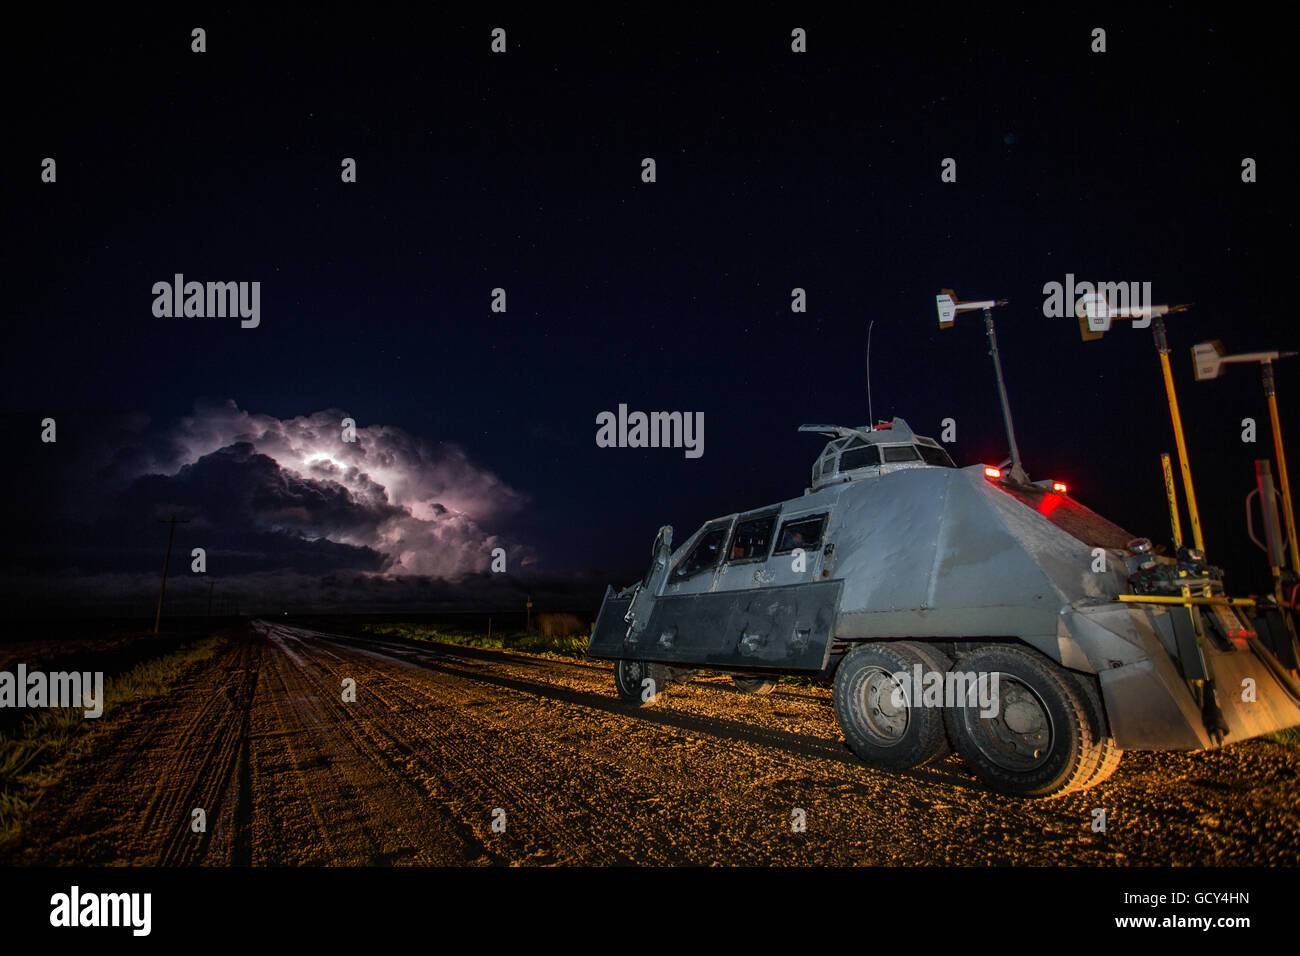 Die Sturmjäger der TIV 2 oder "Tornado abfangen Fahrzeug 2" bereiten Sie sich in Richtung einer tornadischen Superzelle nachts zu fahren. Stockfoto